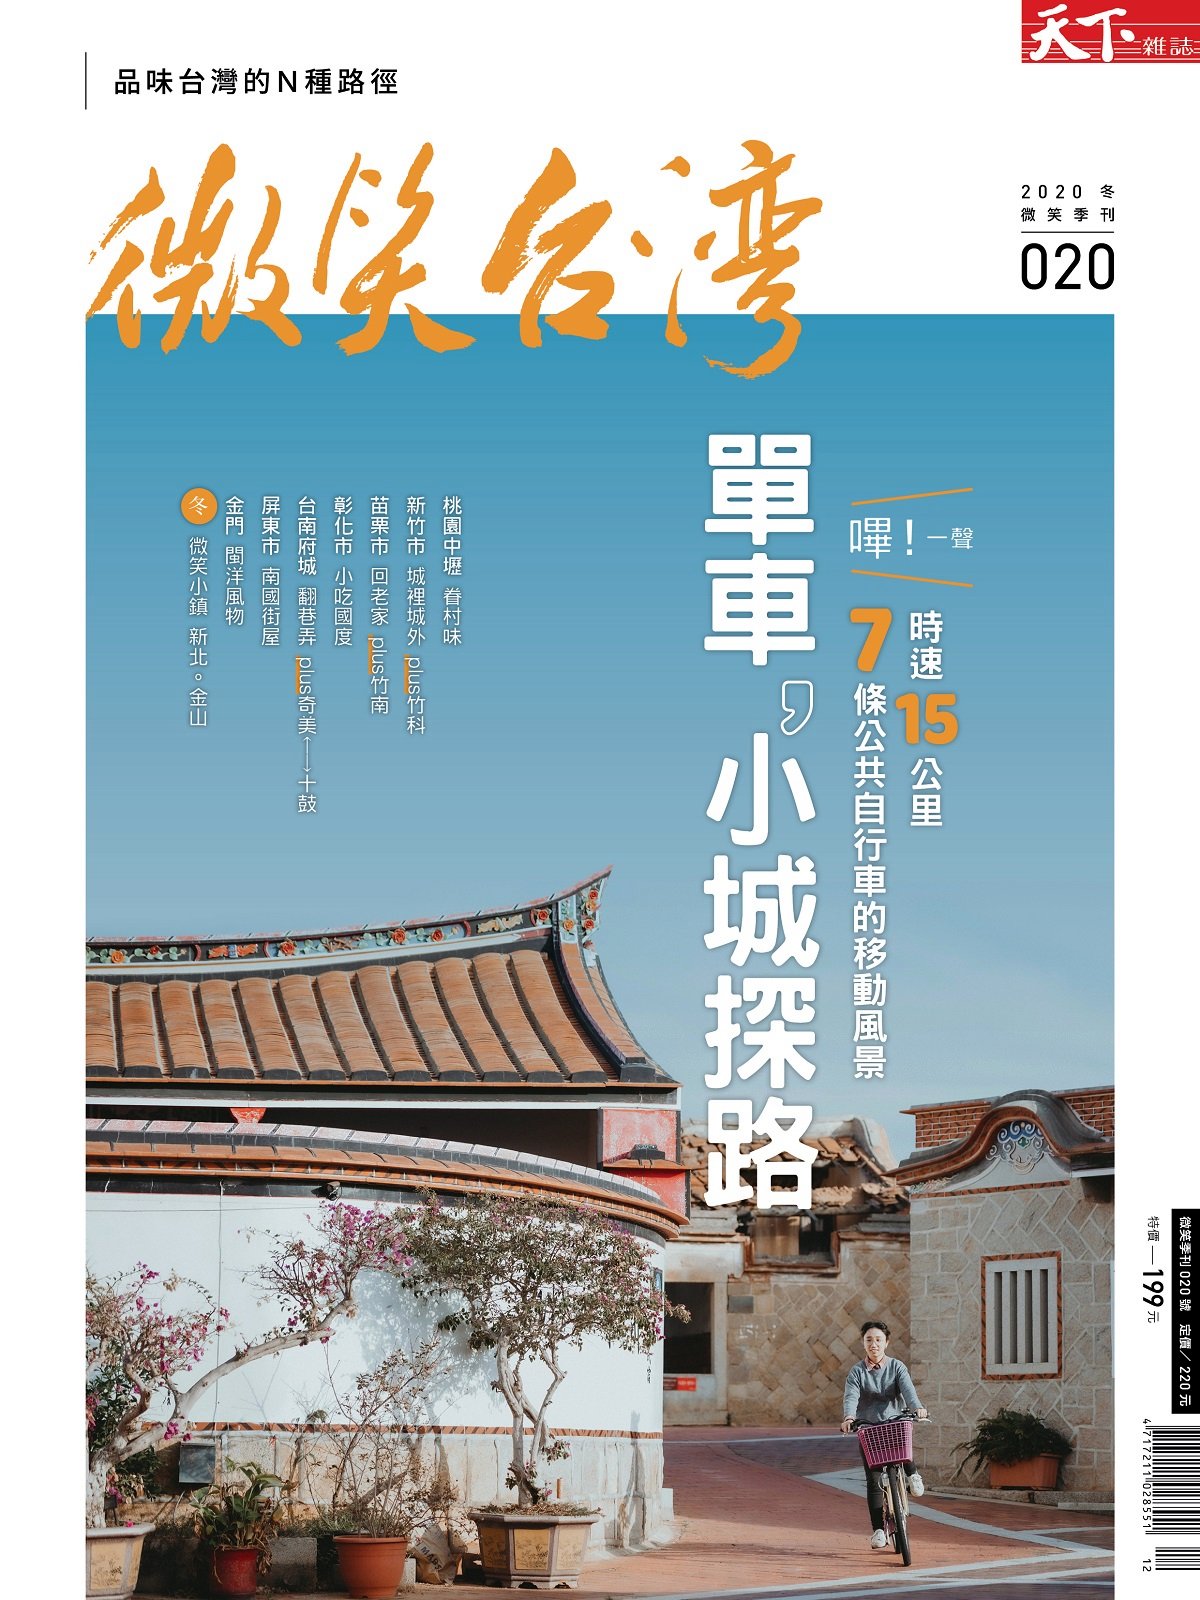 天下雜誌《微笑台灣》 2020 冬季號：單車，小城探路